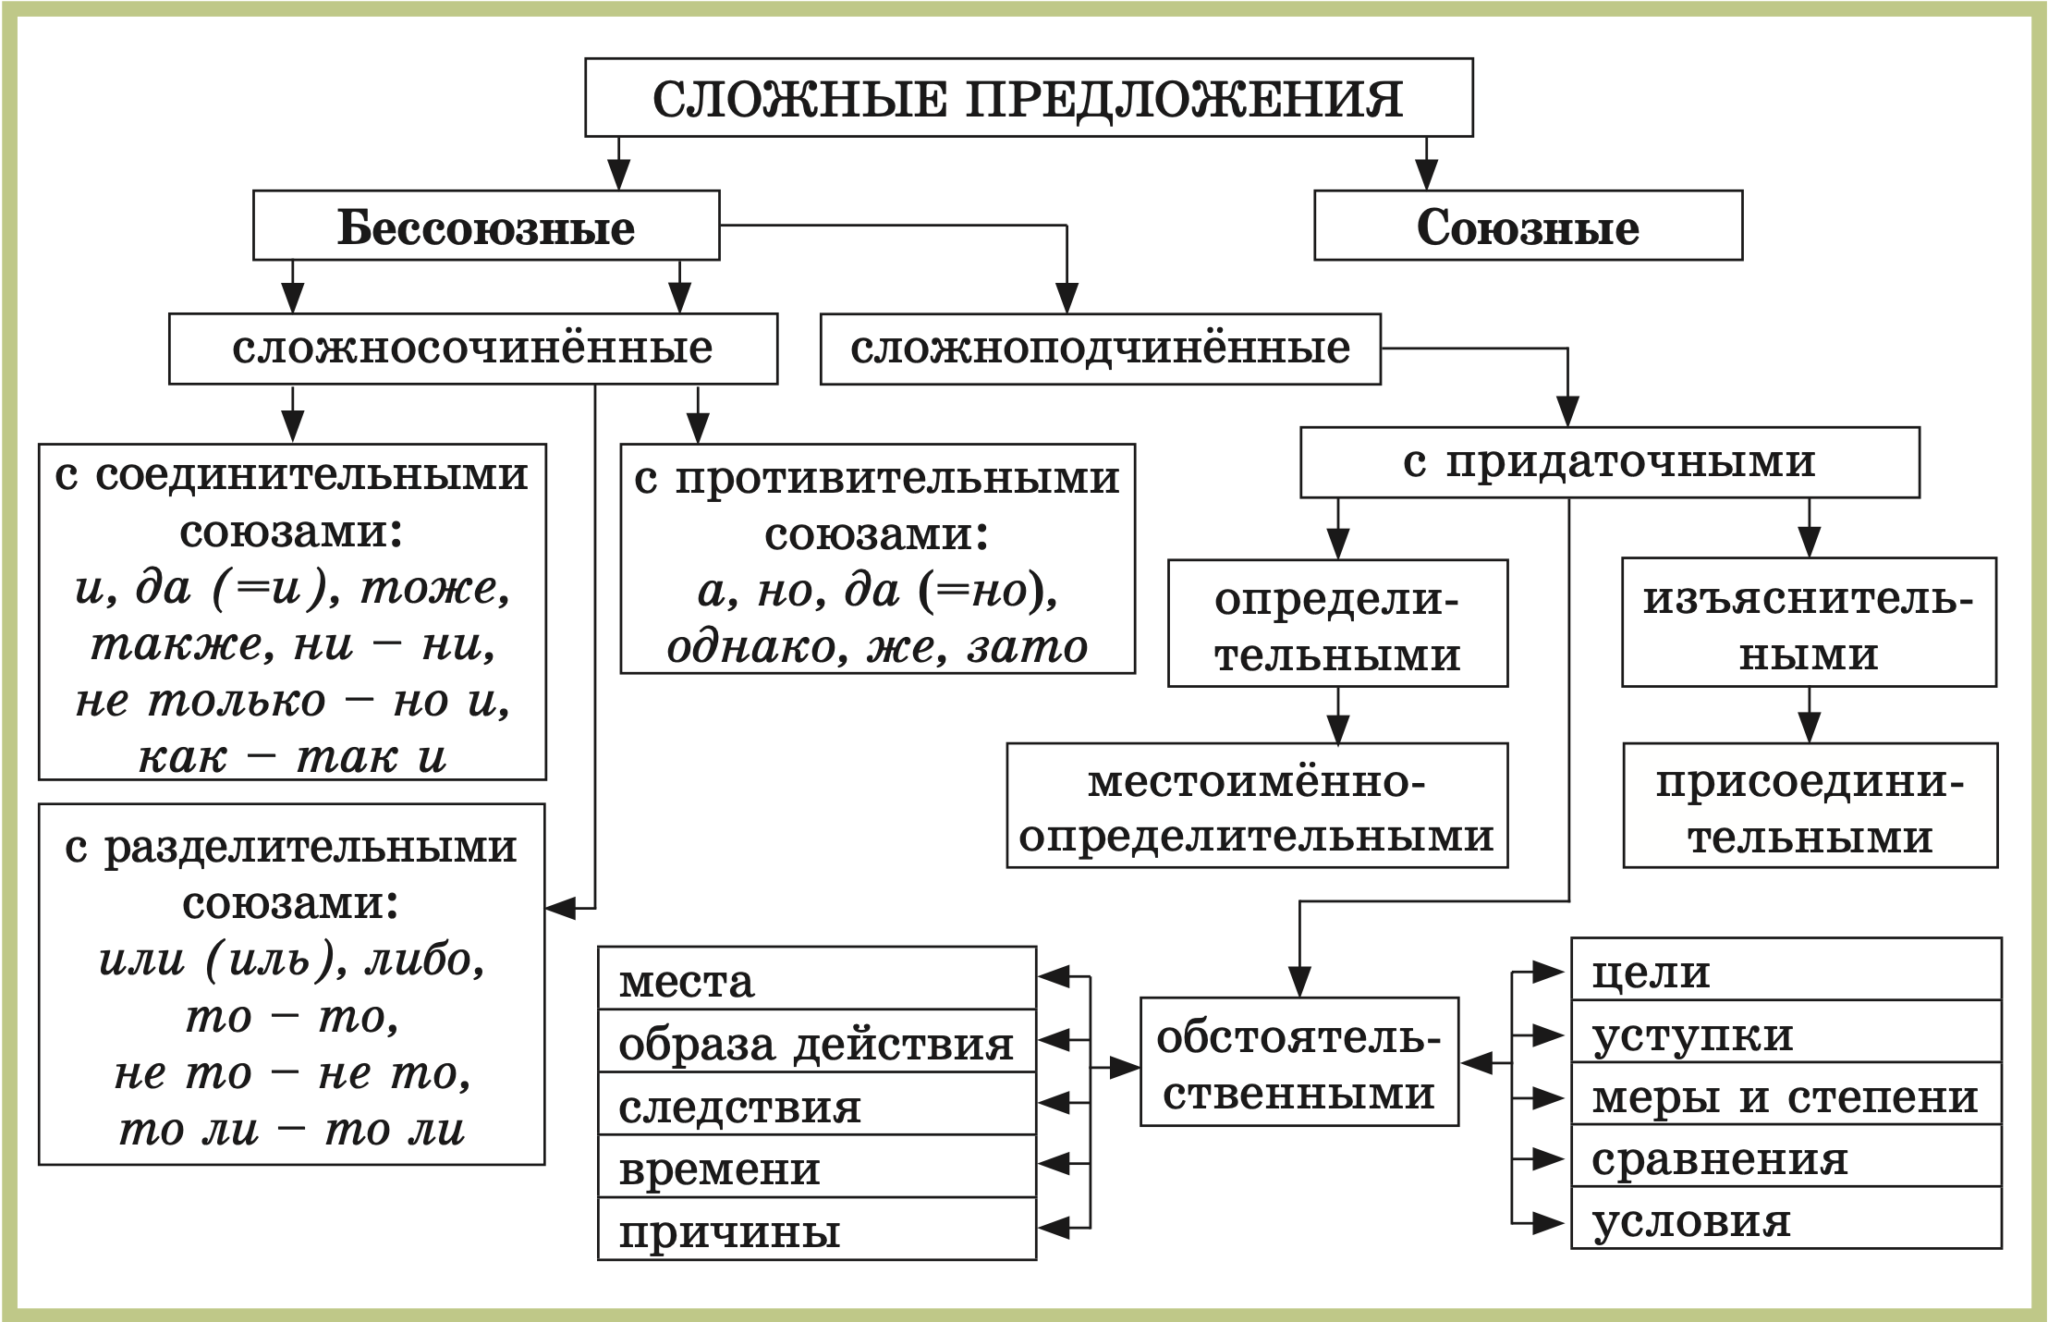 Урок типы сложных предложений 9 класс. Схемы русский язык 5 класс виды сложных предложений. Схема виды сложных предложений 9 класс. Схема сложного предложения 5 класс. Схема сложного предложения сложносочиненного.